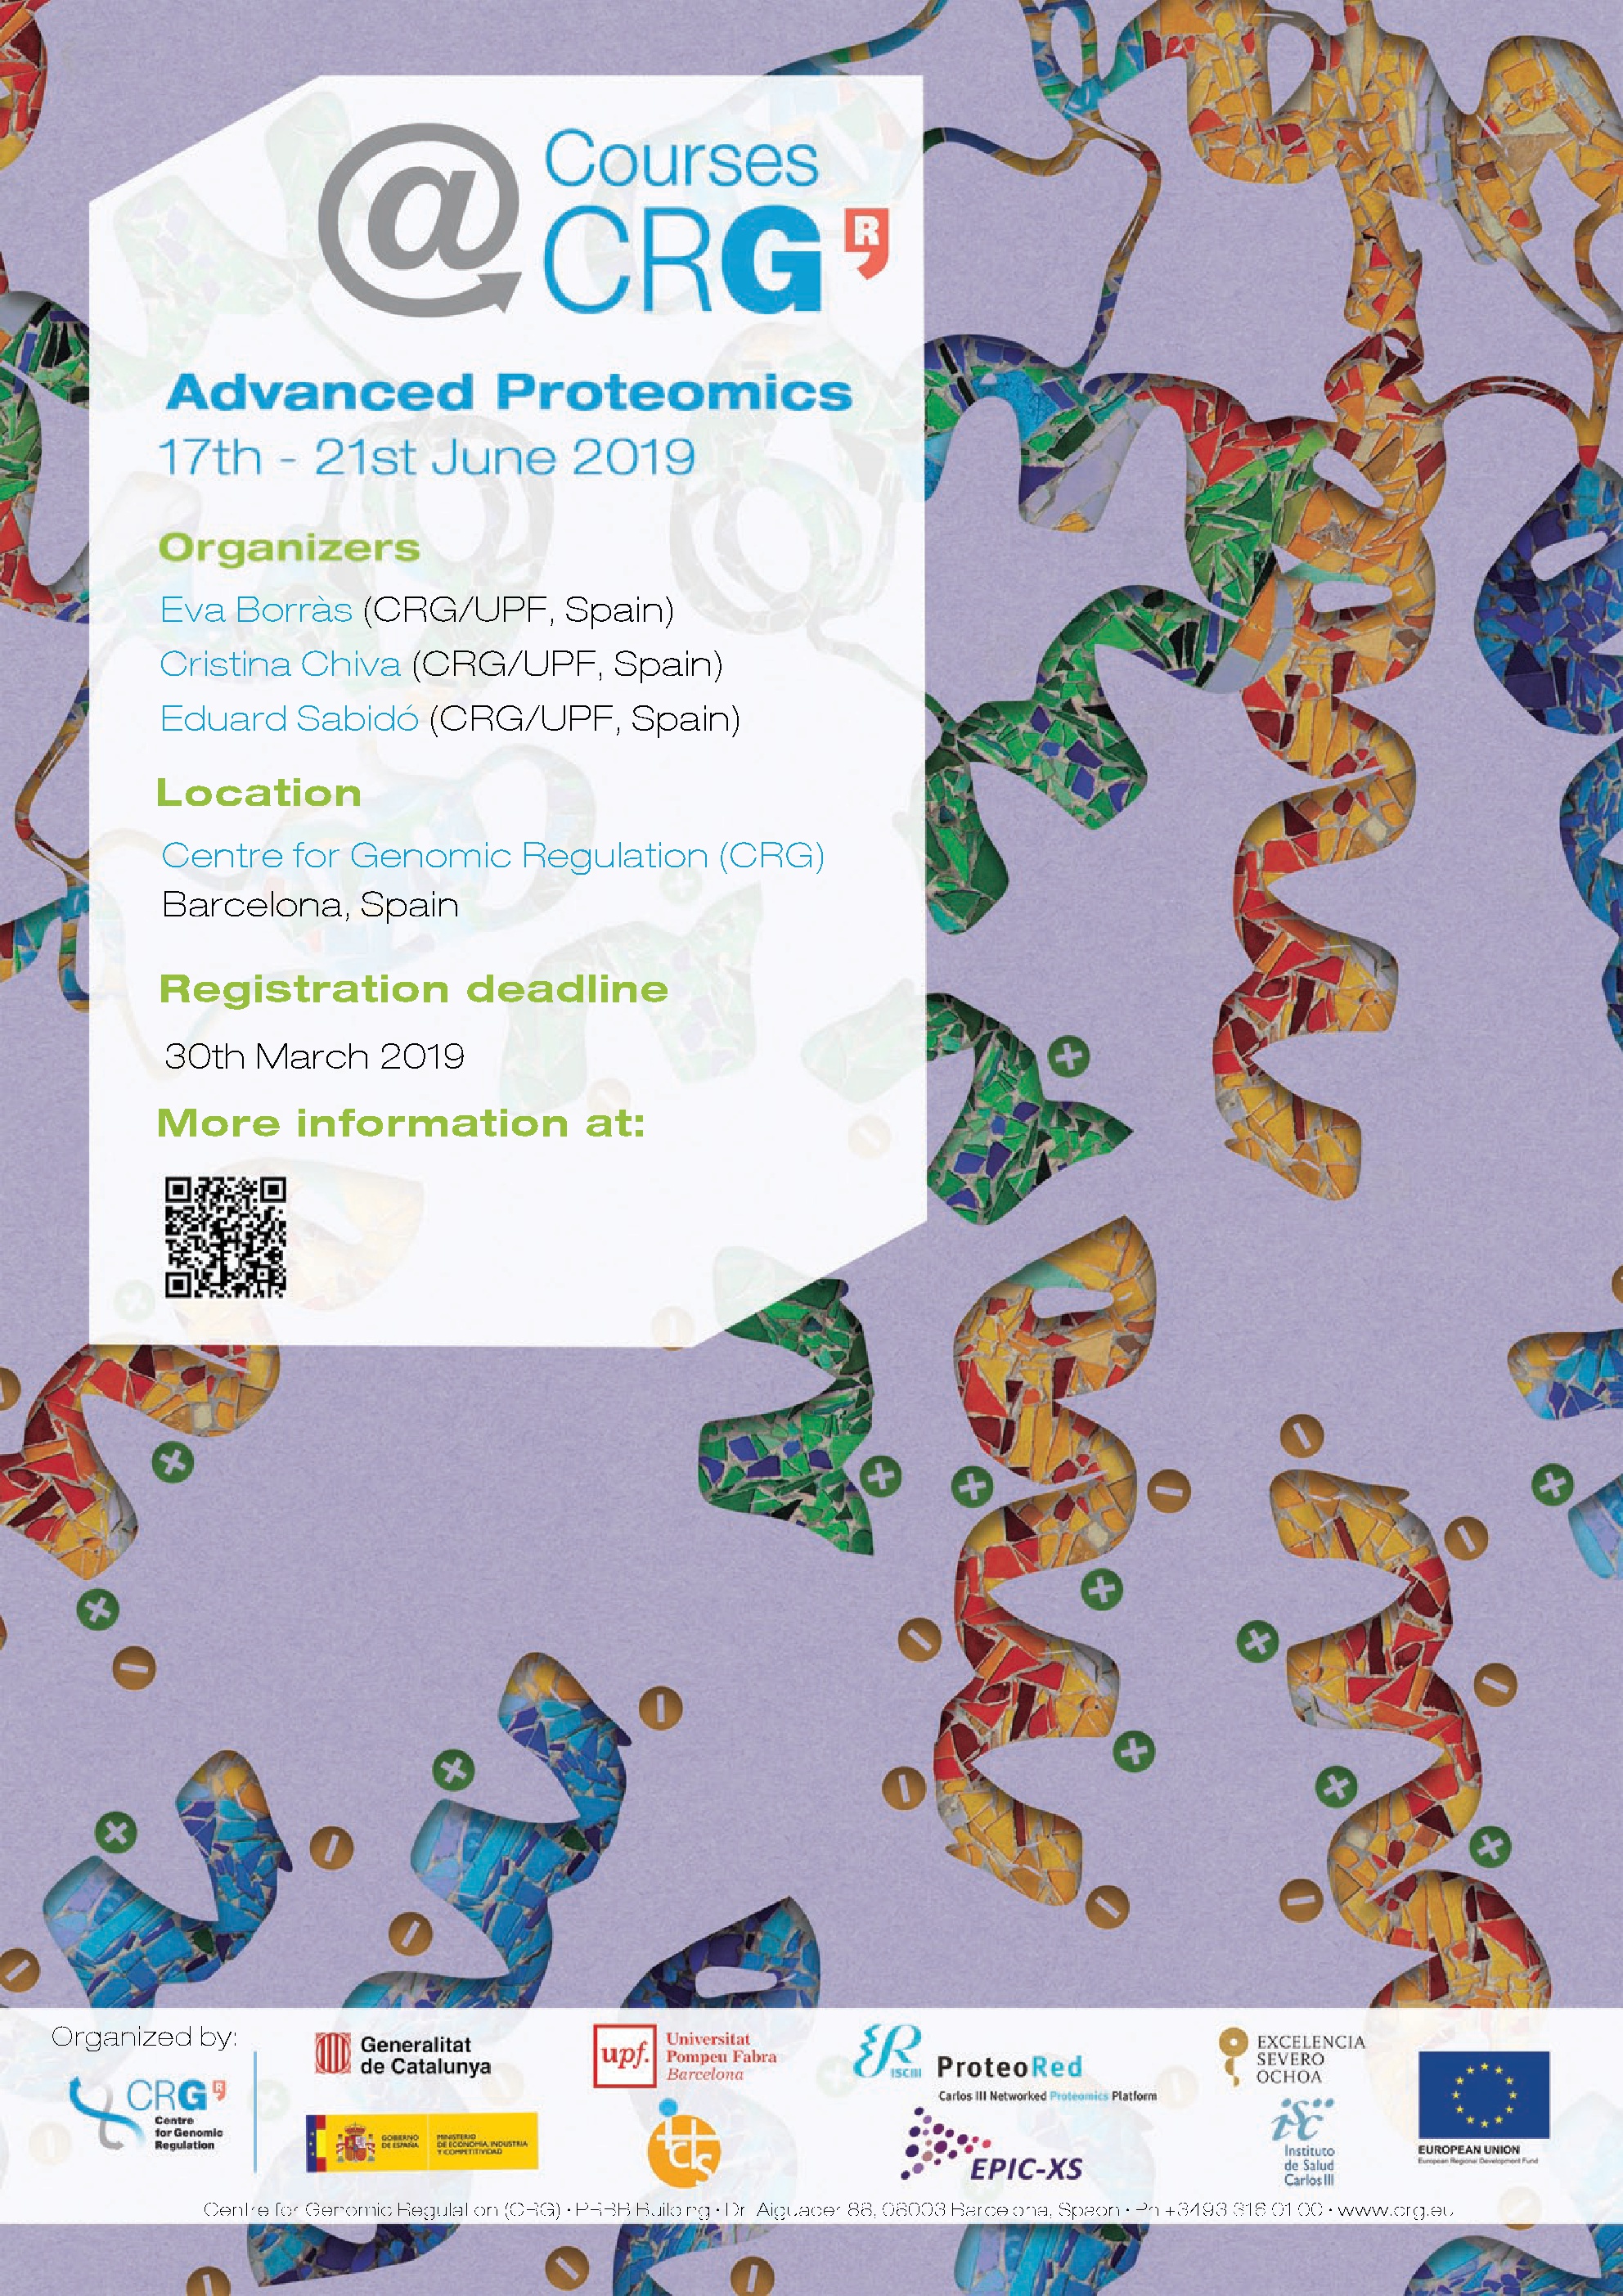 Courses@CRG: Advanced Proteomics, Barcelona, Cataluna, Spain